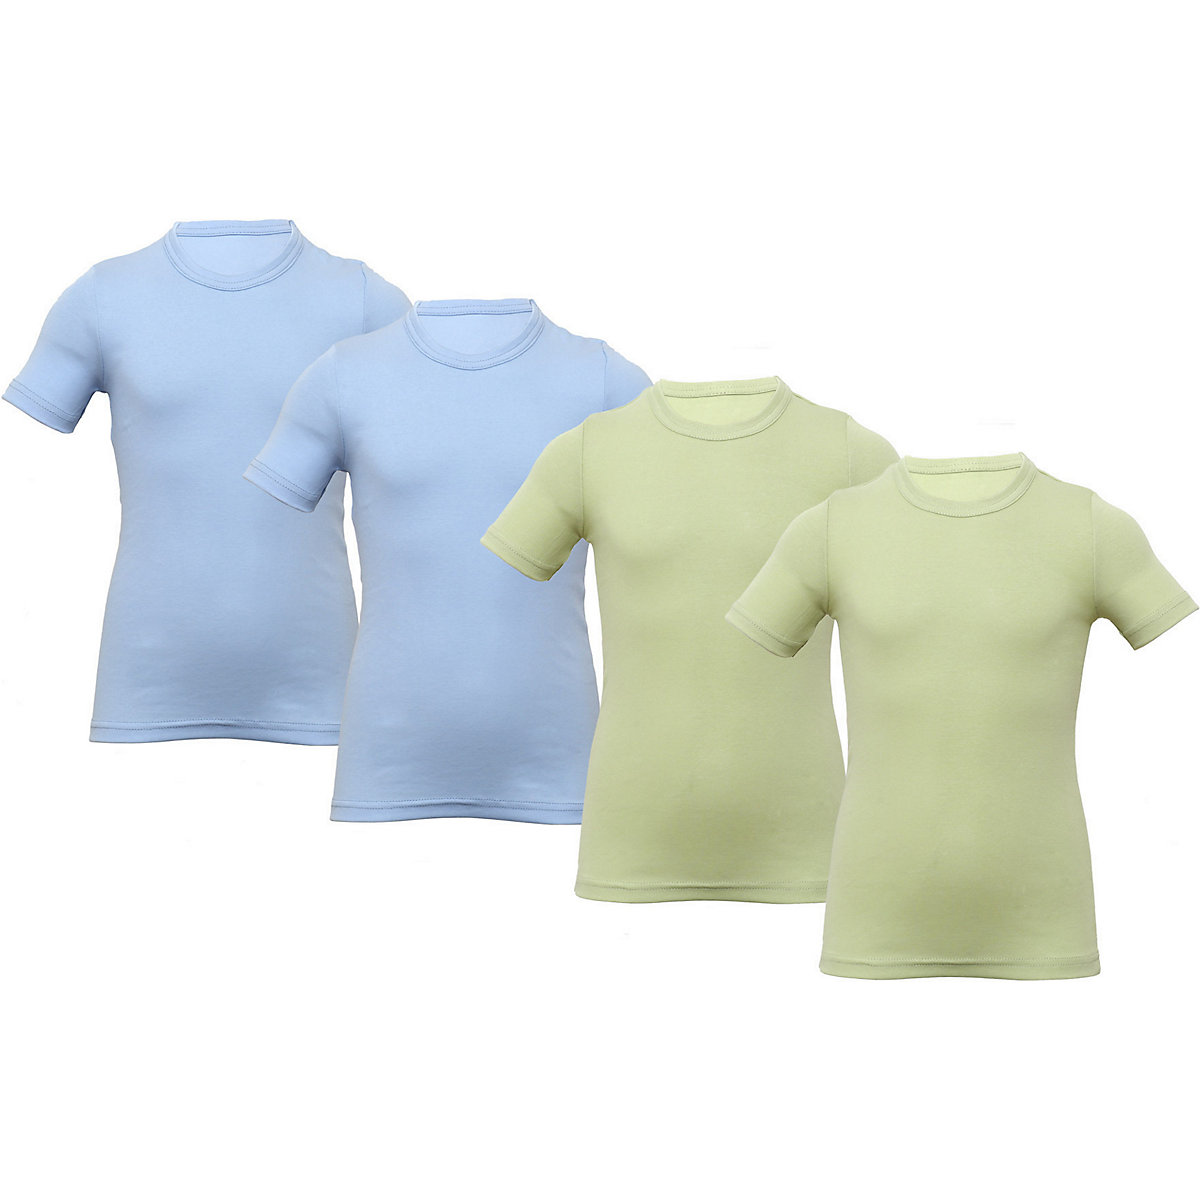 CARBURANT Unterhemden 4 PACK Unterhemden für Jungen hellblau/grün